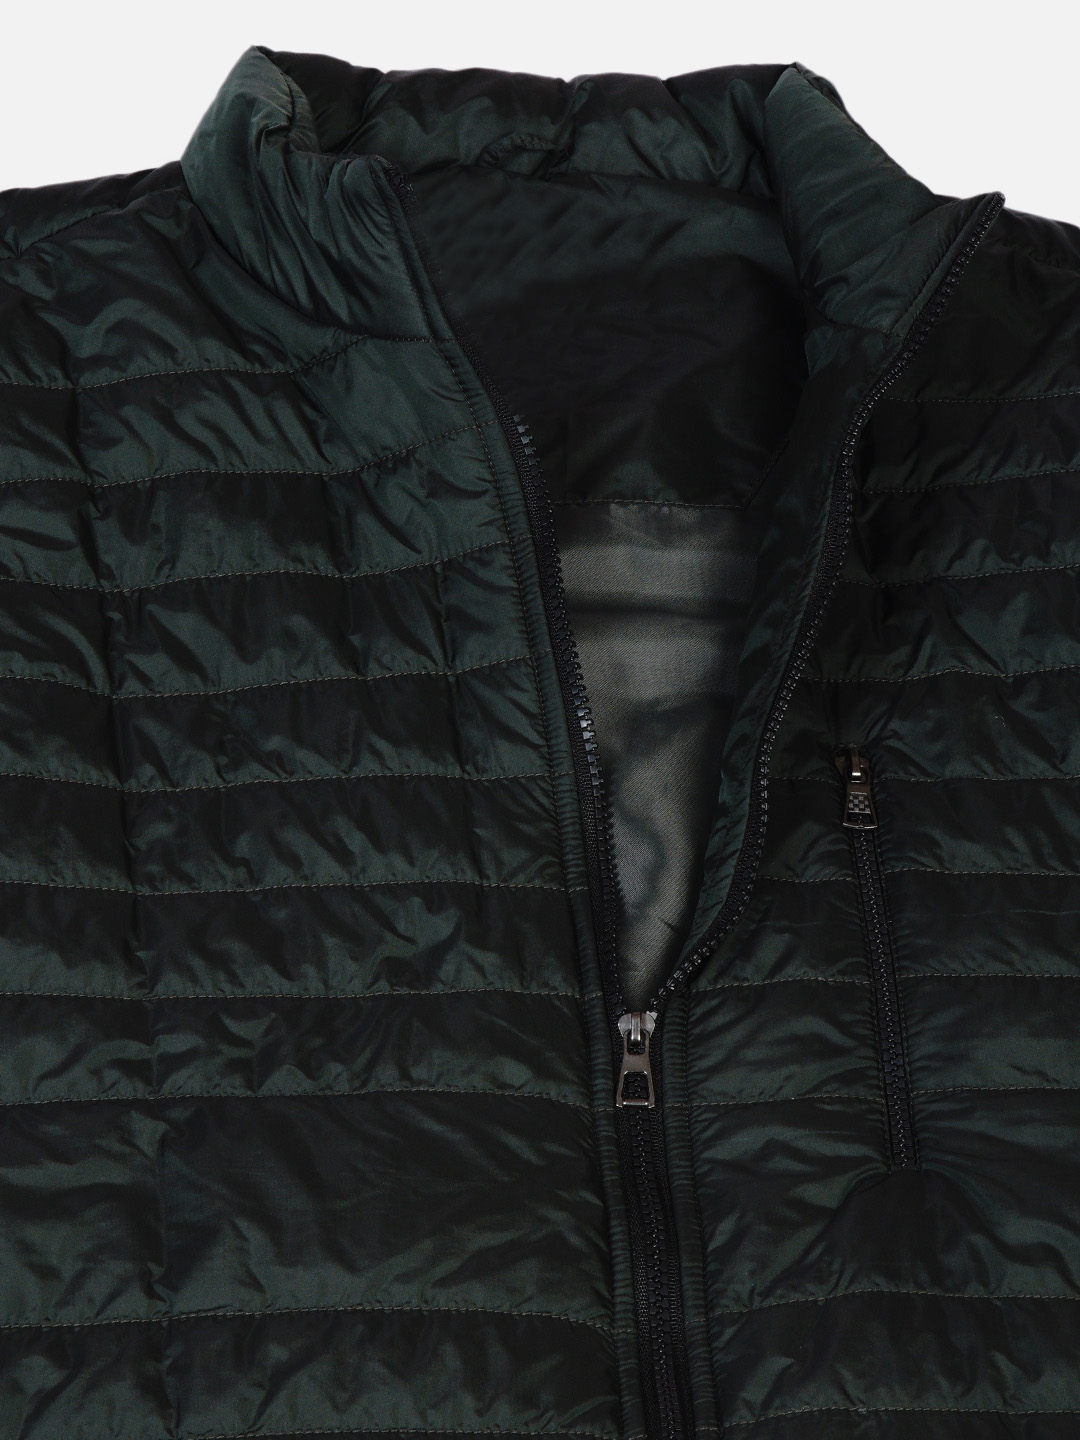 winterwear/jackets/JPJKT73010A/jpjkt73010a-2.jpg